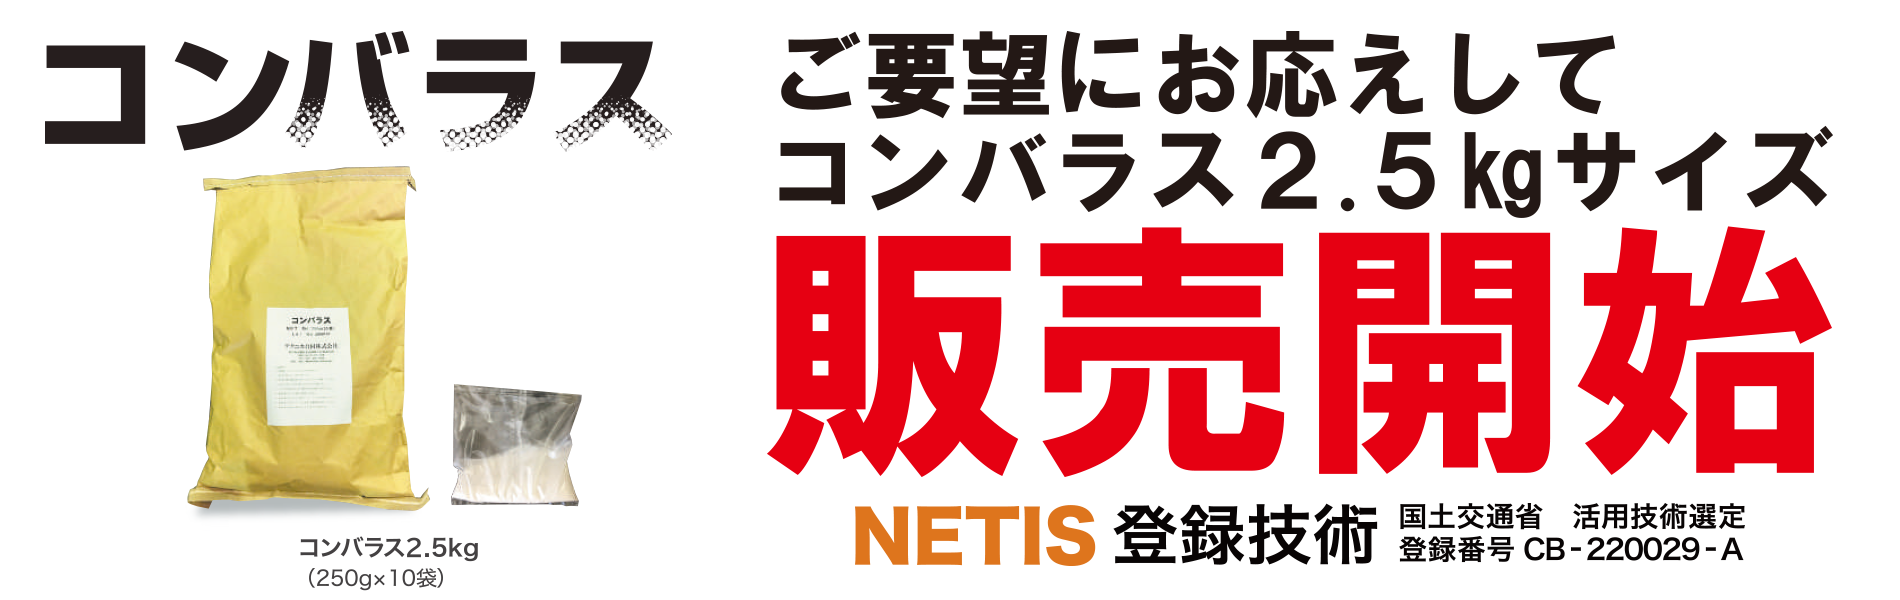 NETIS登録残コン戻りコン処理剤コンバラス